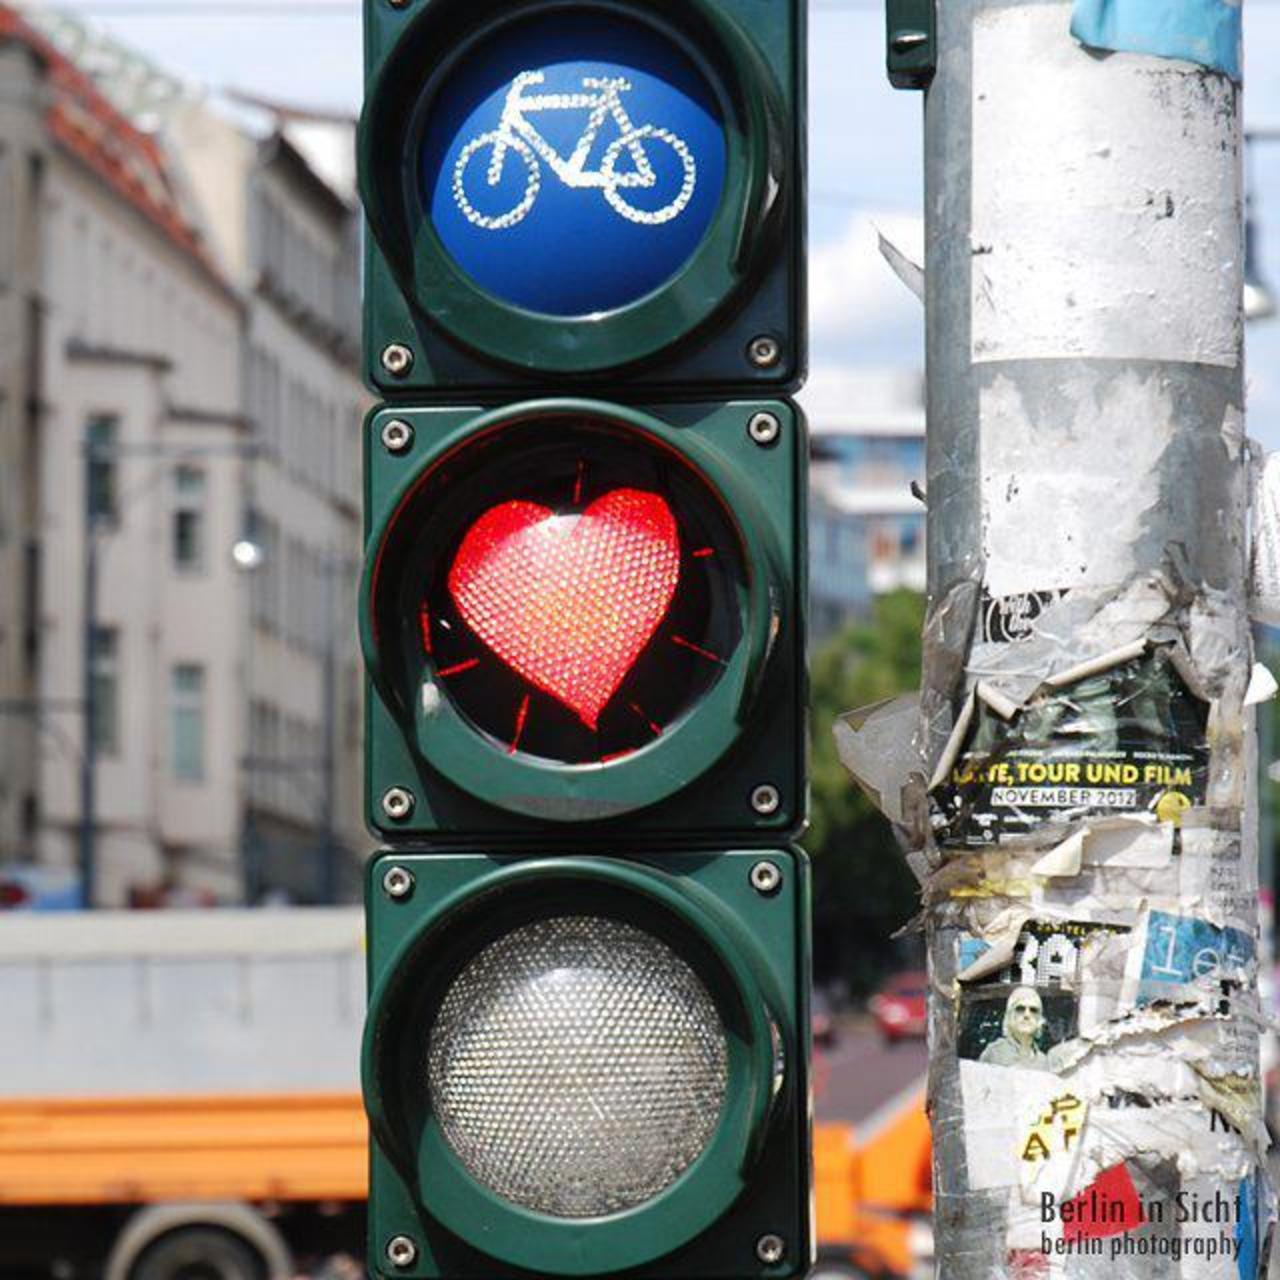 Love in Berlin
#love #heart #Streetart #streetartberlin #graffitiberlin #graffiti #fol2015 #berlininsicht  #berlinl… http://t.co/wG2zvIxXFT